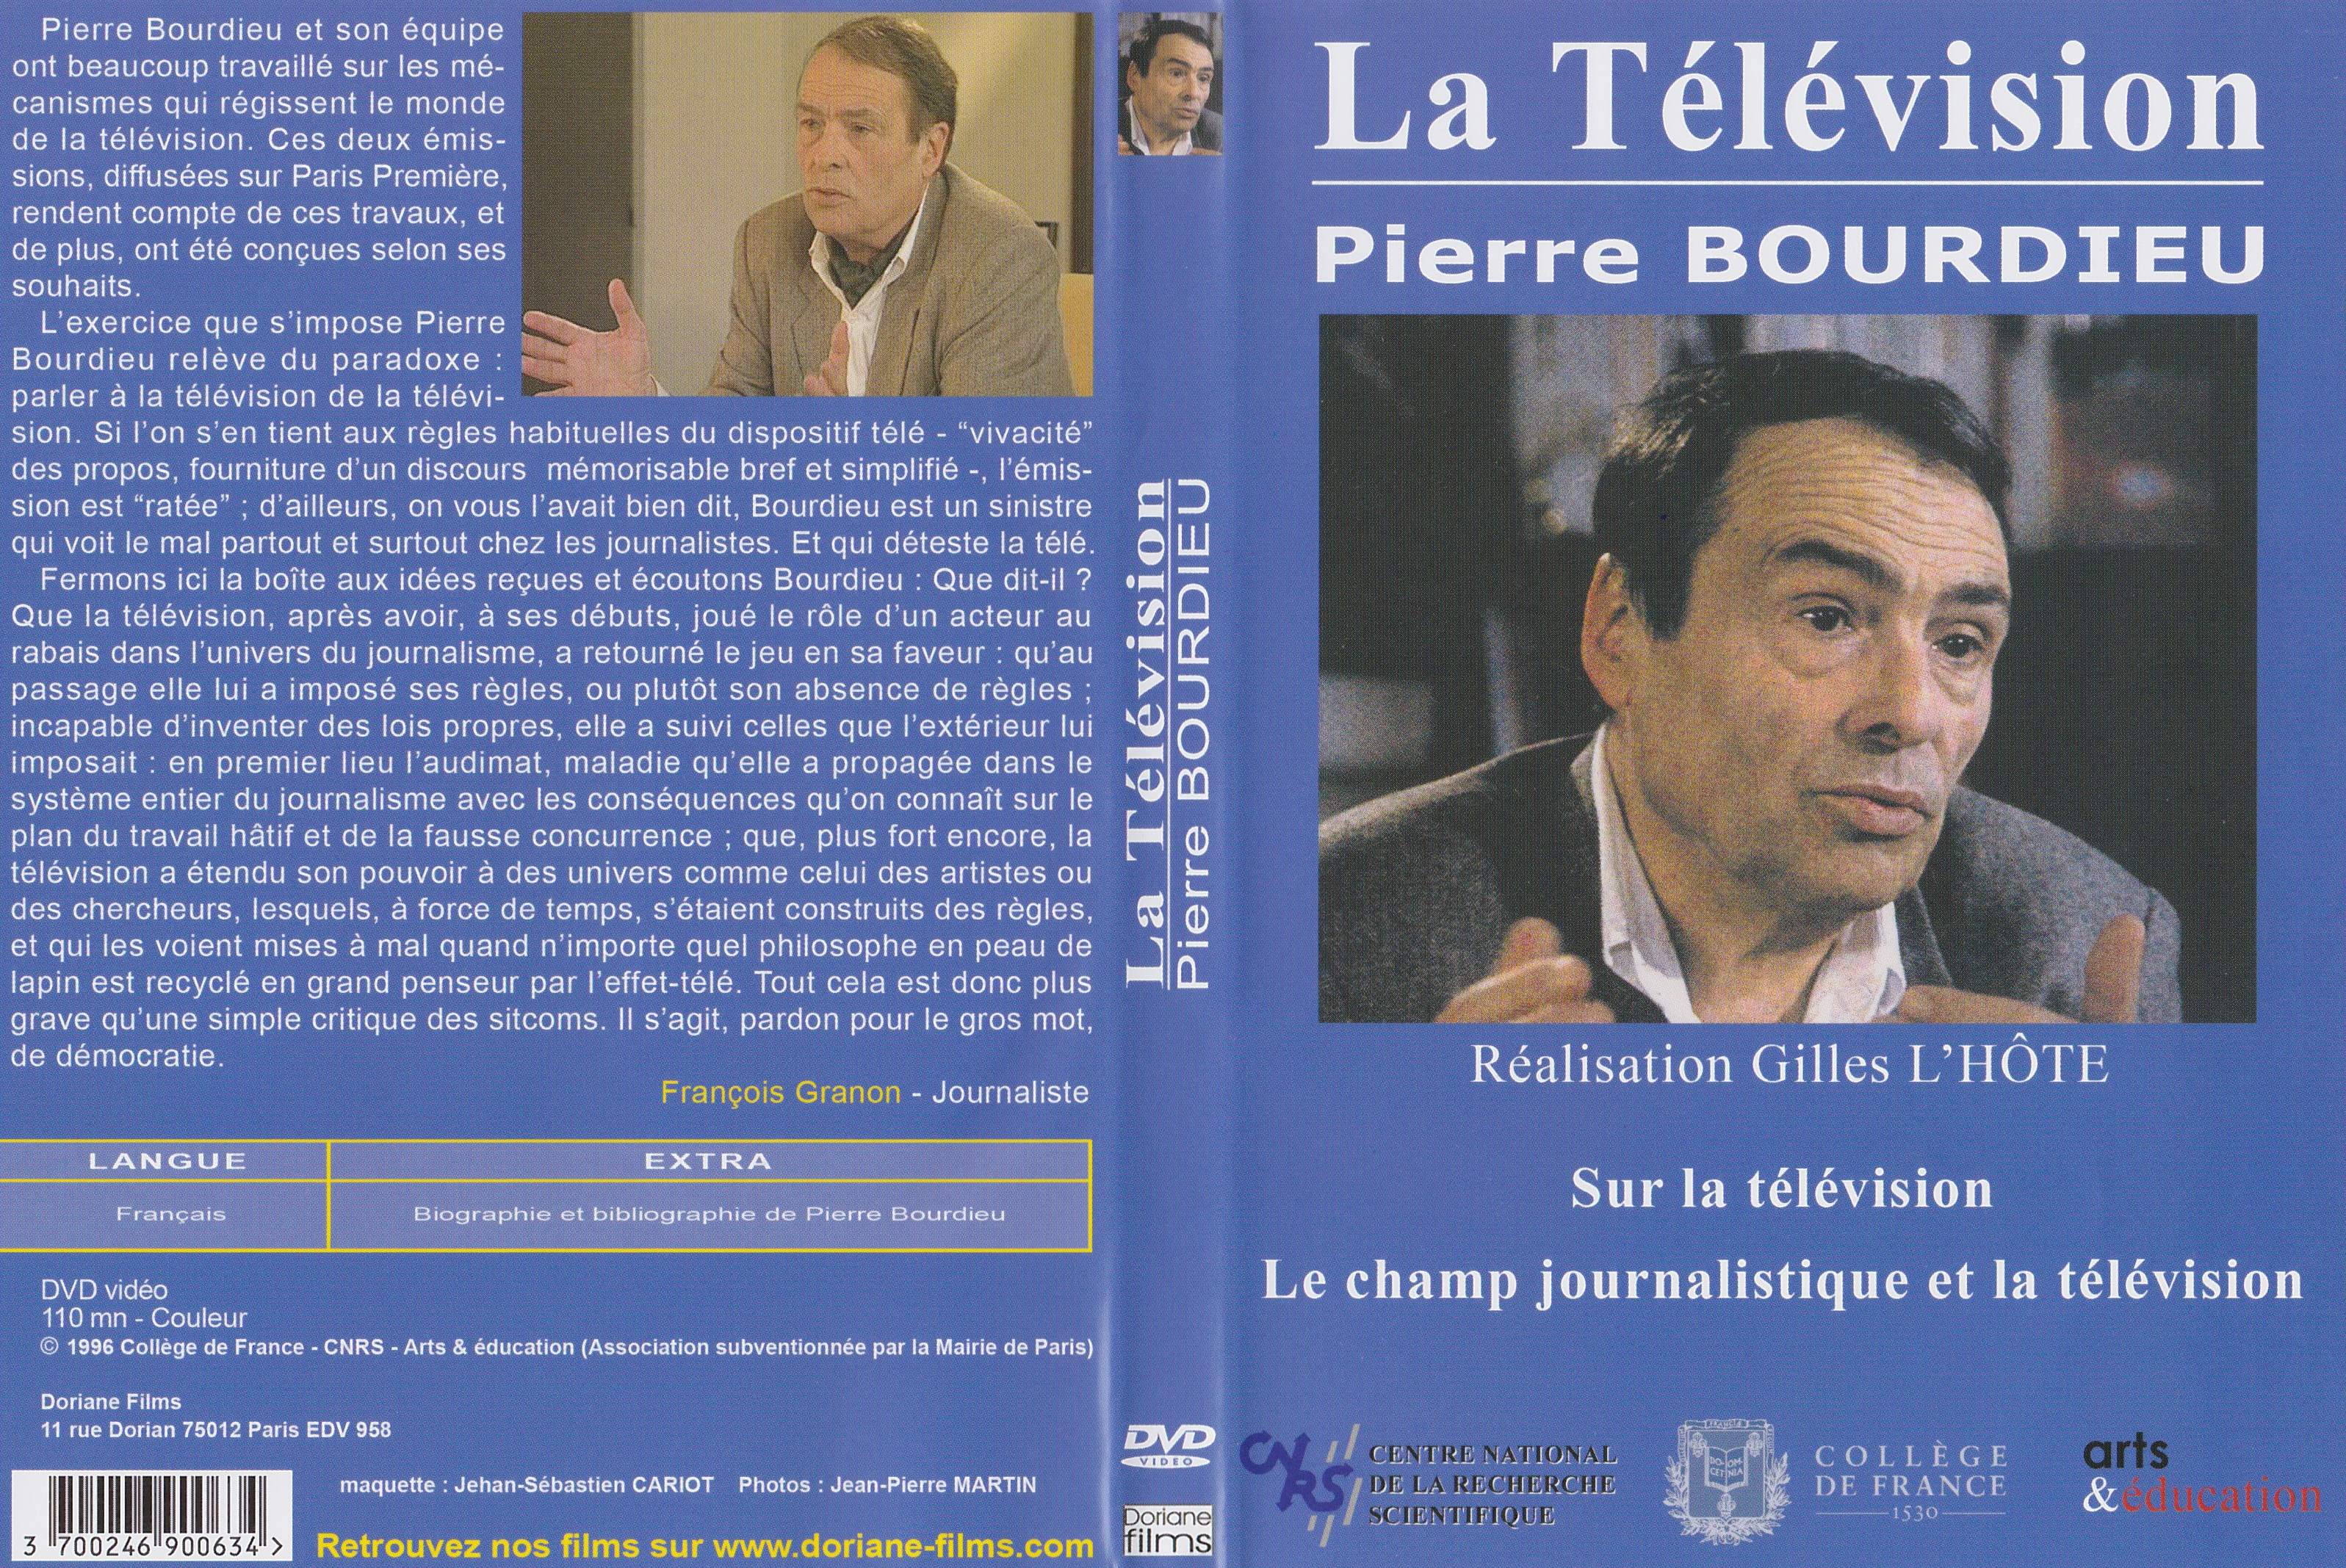 Jaquette DVD La television - Pierre Bourdieu